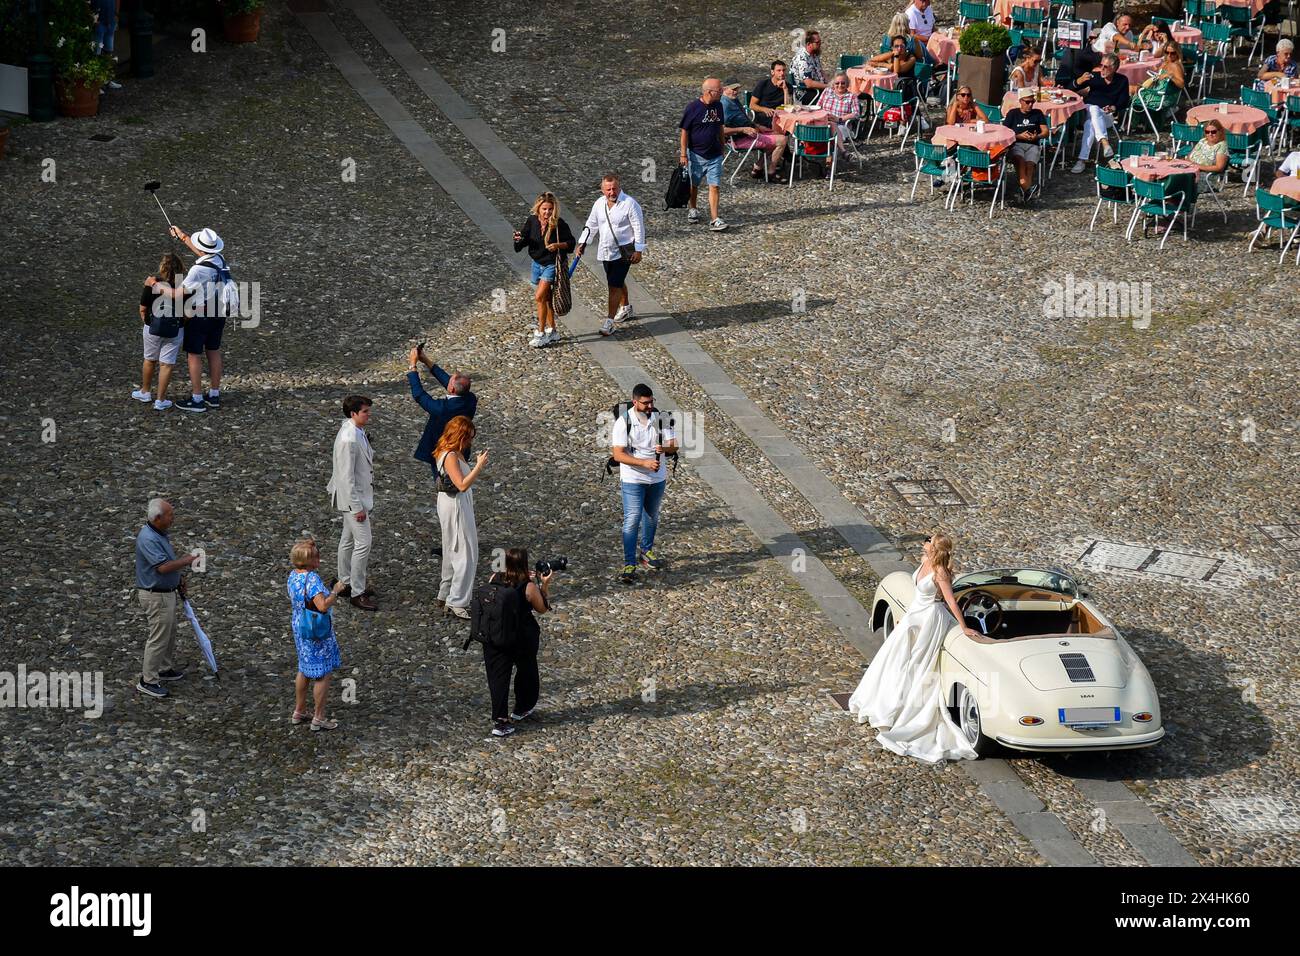 Vue surélevée de la célèbre Piazzetta (petite place) dans le village balnéaire, avec une mariée pendant la séance photo, Portofino, Gênes, Ligurie, Italie Banque D'Images